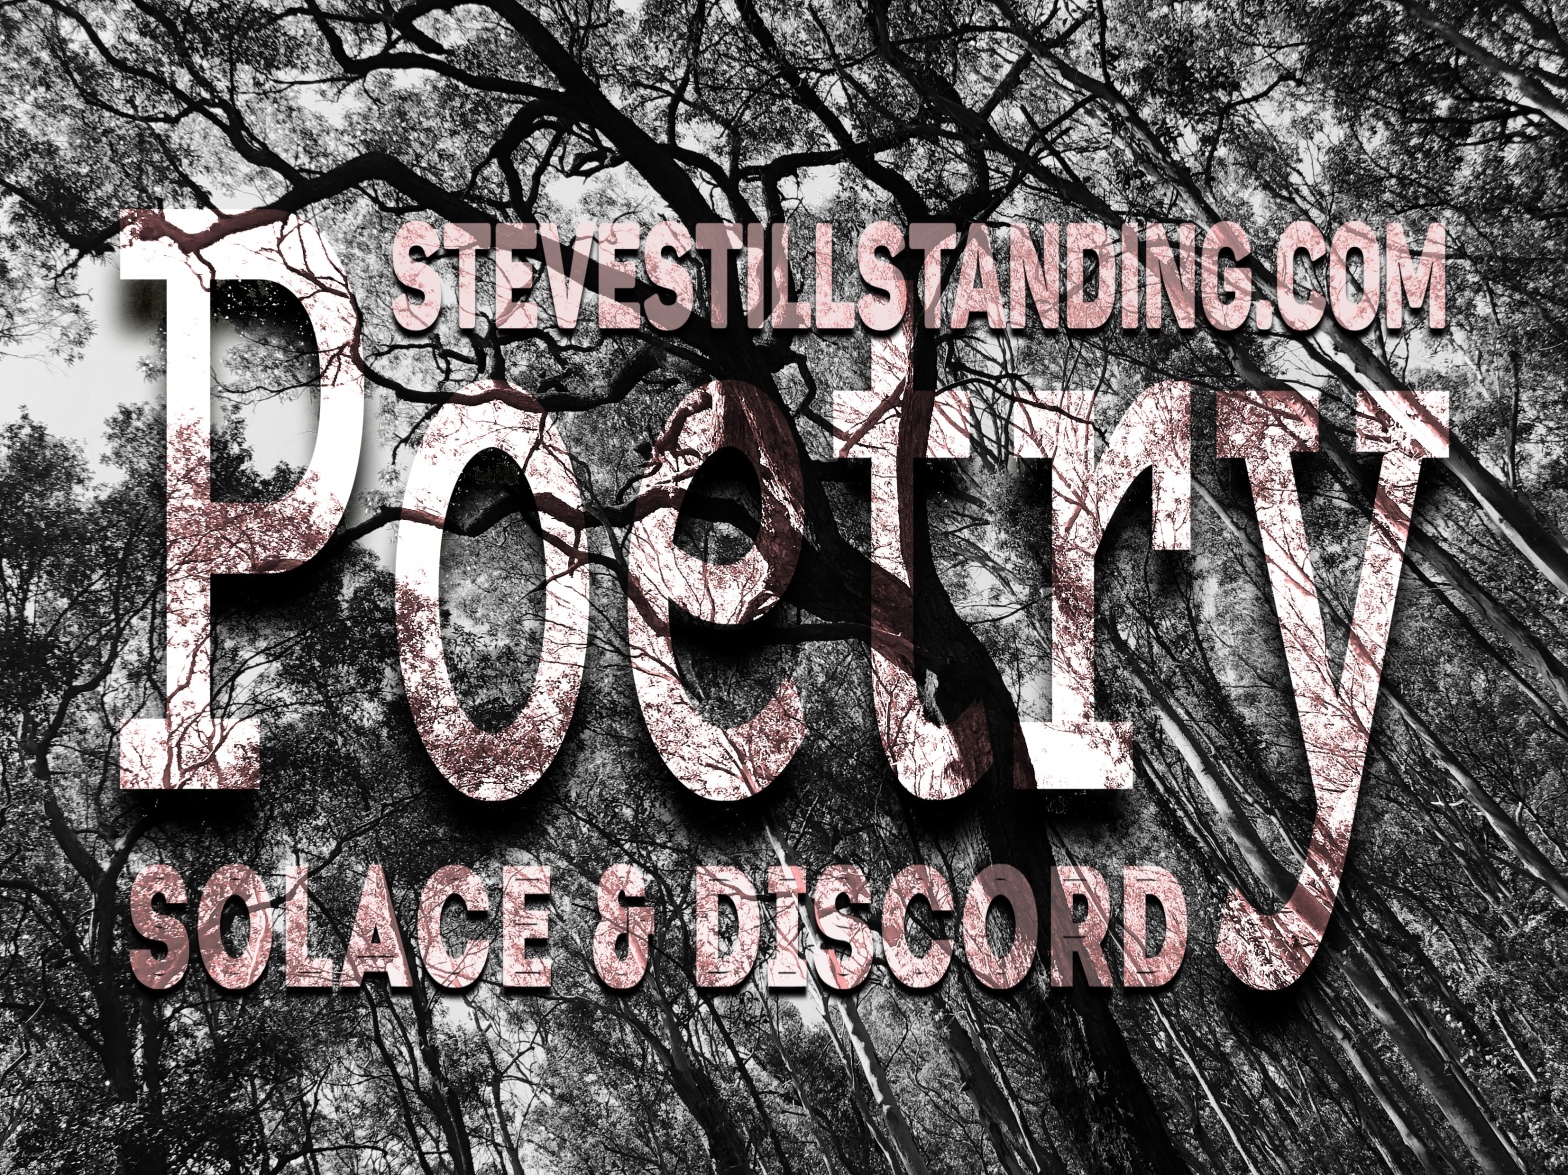 Steve still standing - Poetry